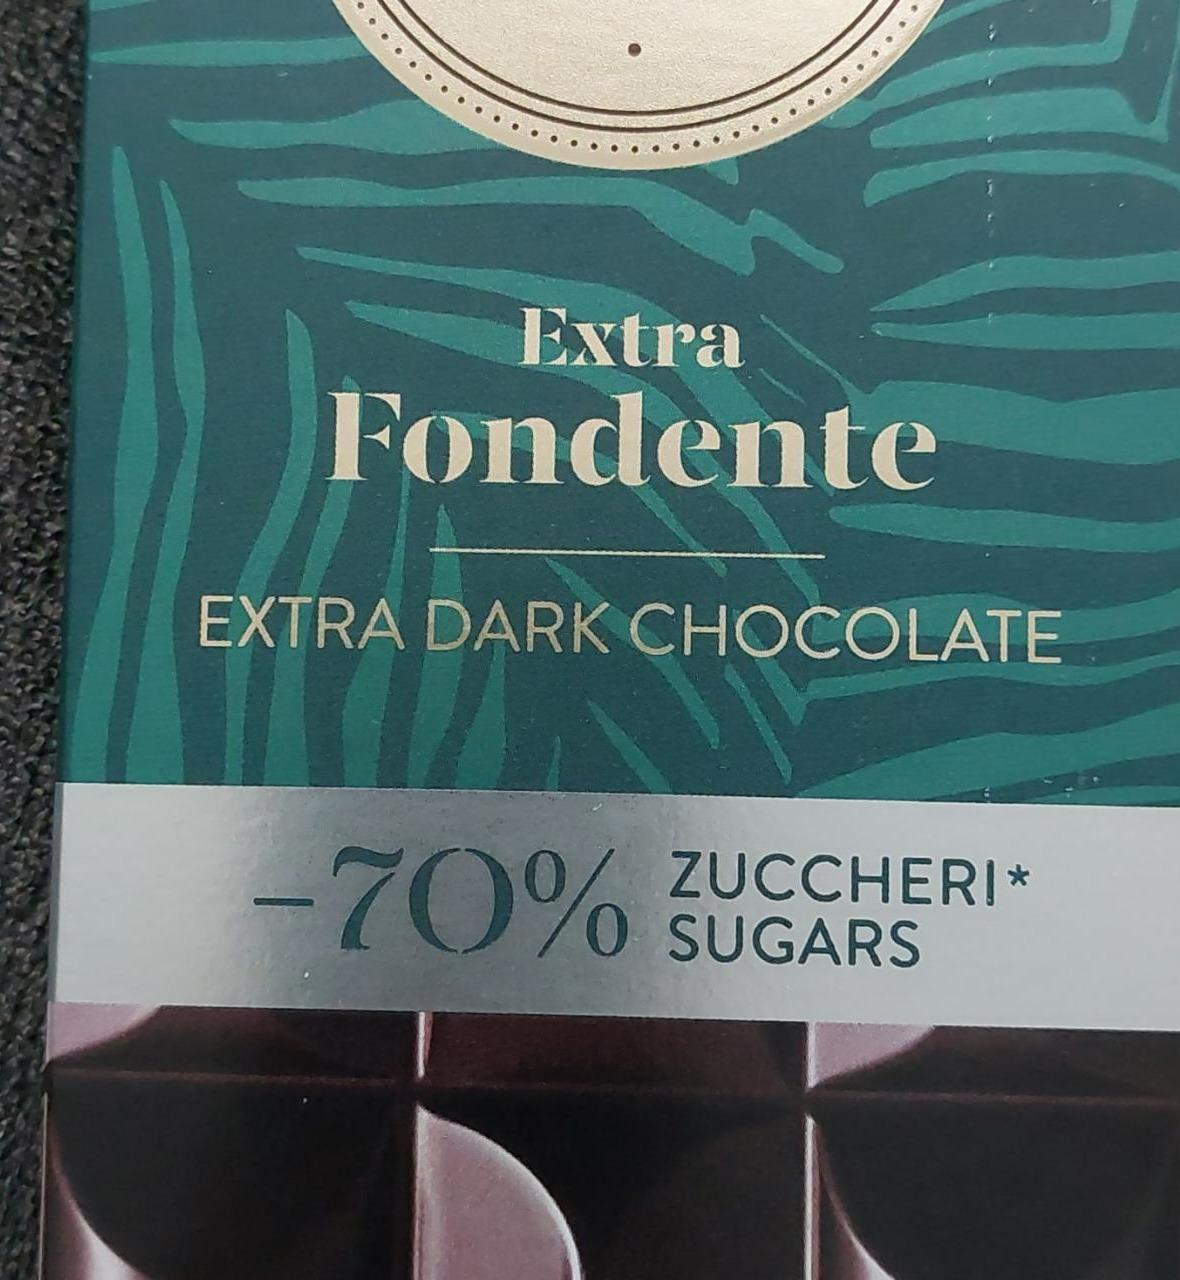 Fotografie - Extra fondente extra dark chocolate Venchi